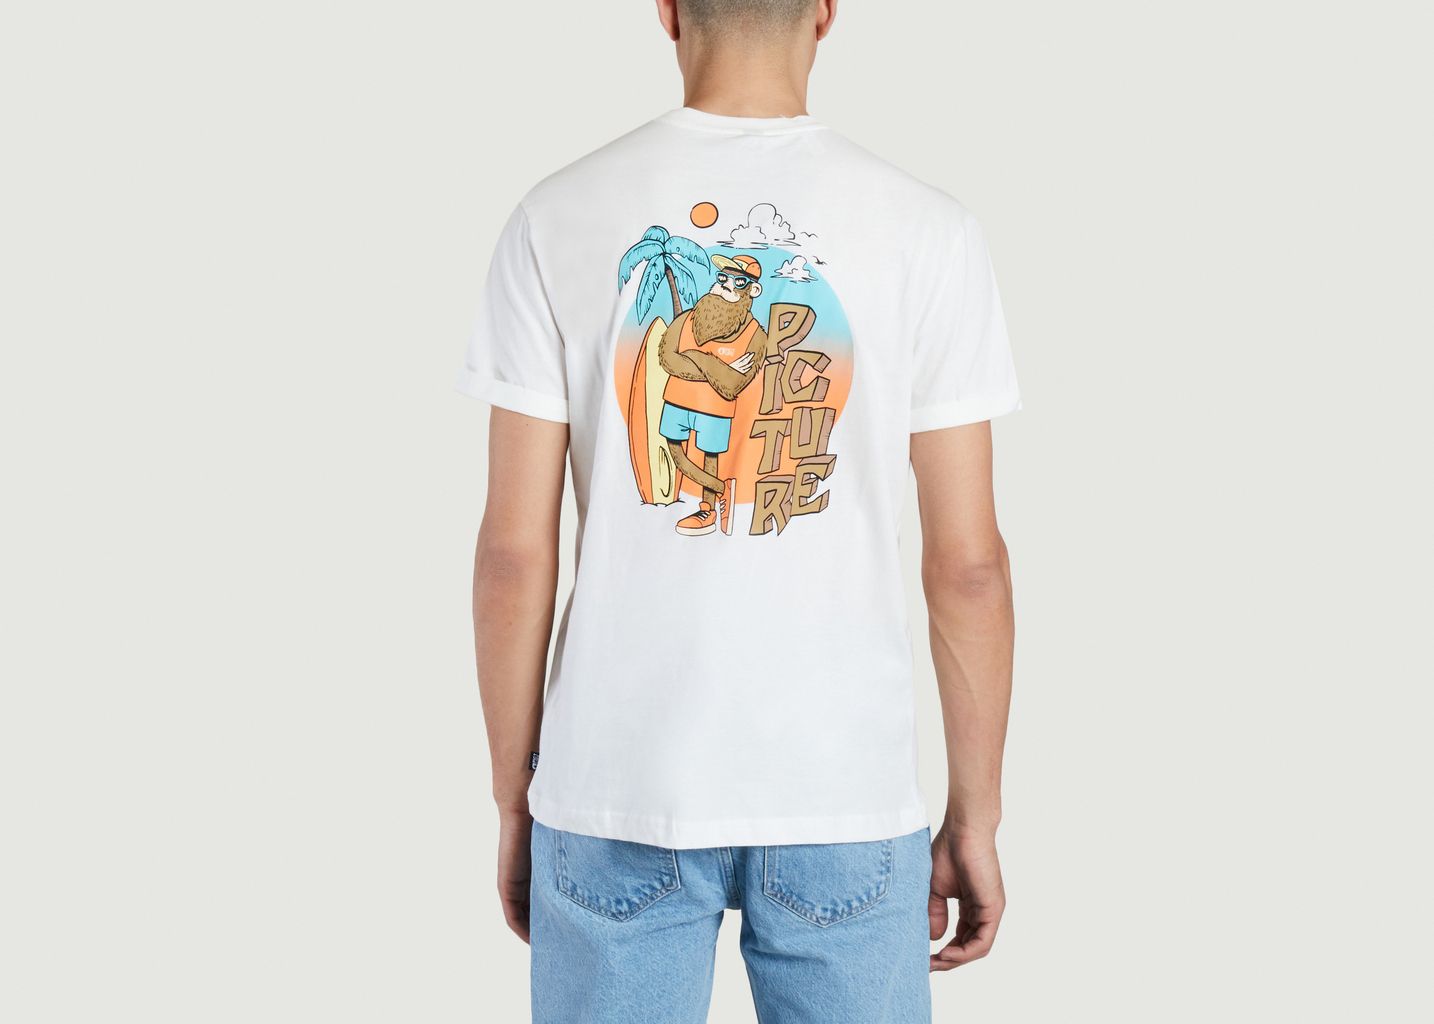 Gorya tee shirt - Picture Organic